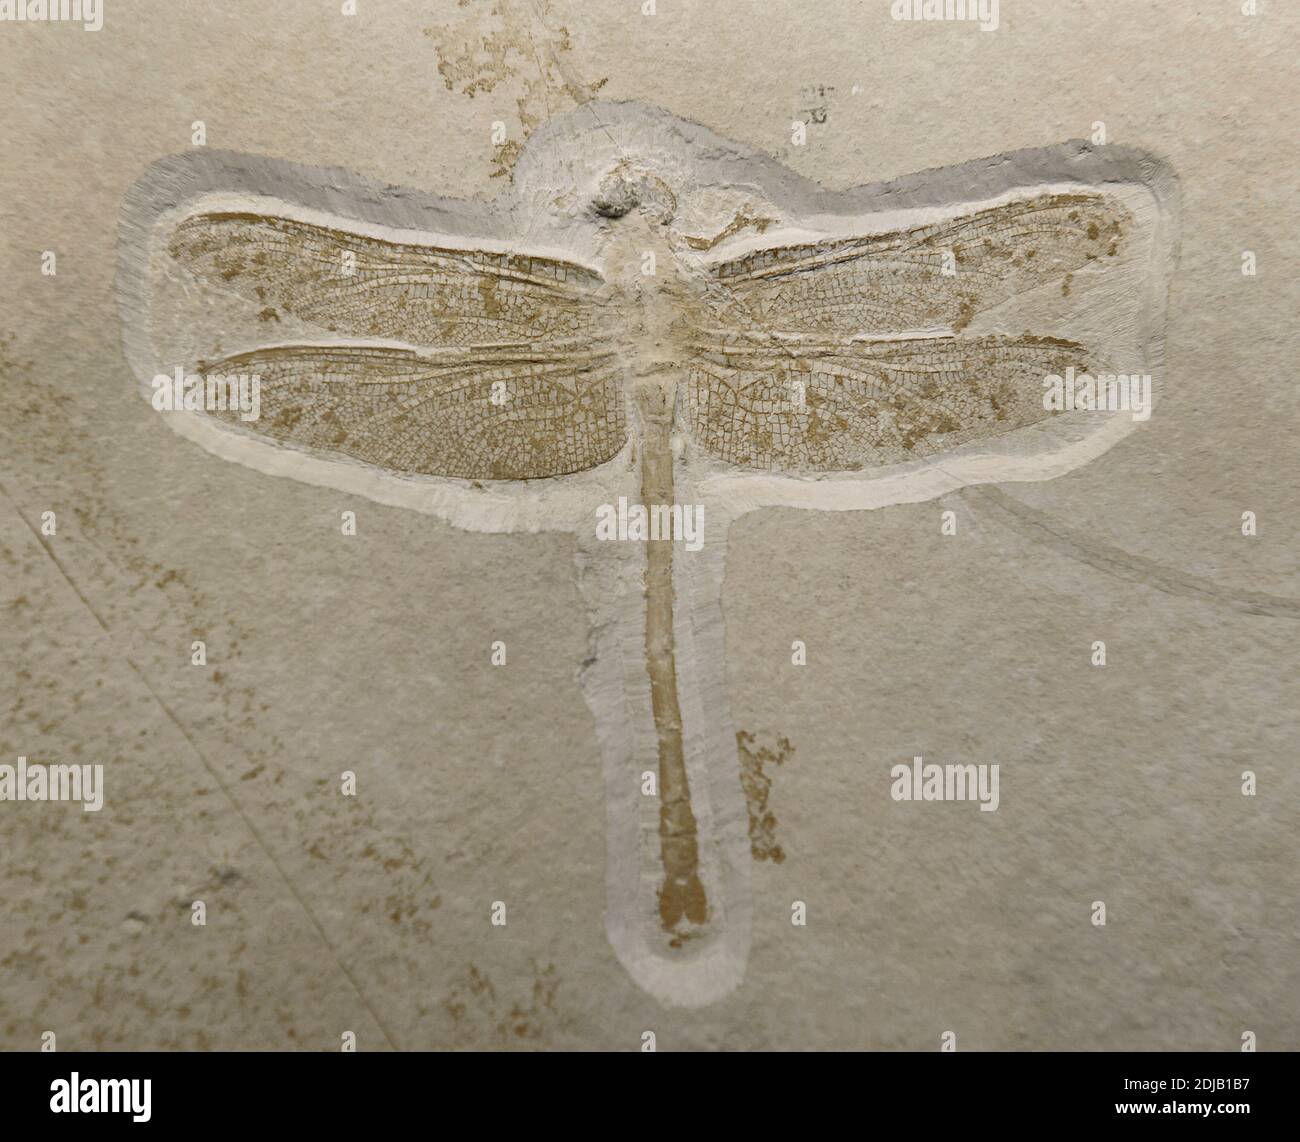 Insetto preistorico fossilizzato. Urogomphus eximius. Esempio di calcare Solnhofen, vicino a Solnhofen, Baviera, Germania. Ultimo giurassico. 150 milioni di anni fa. Museo di Storia Naturale, Berlino. Germania. Foto Stock